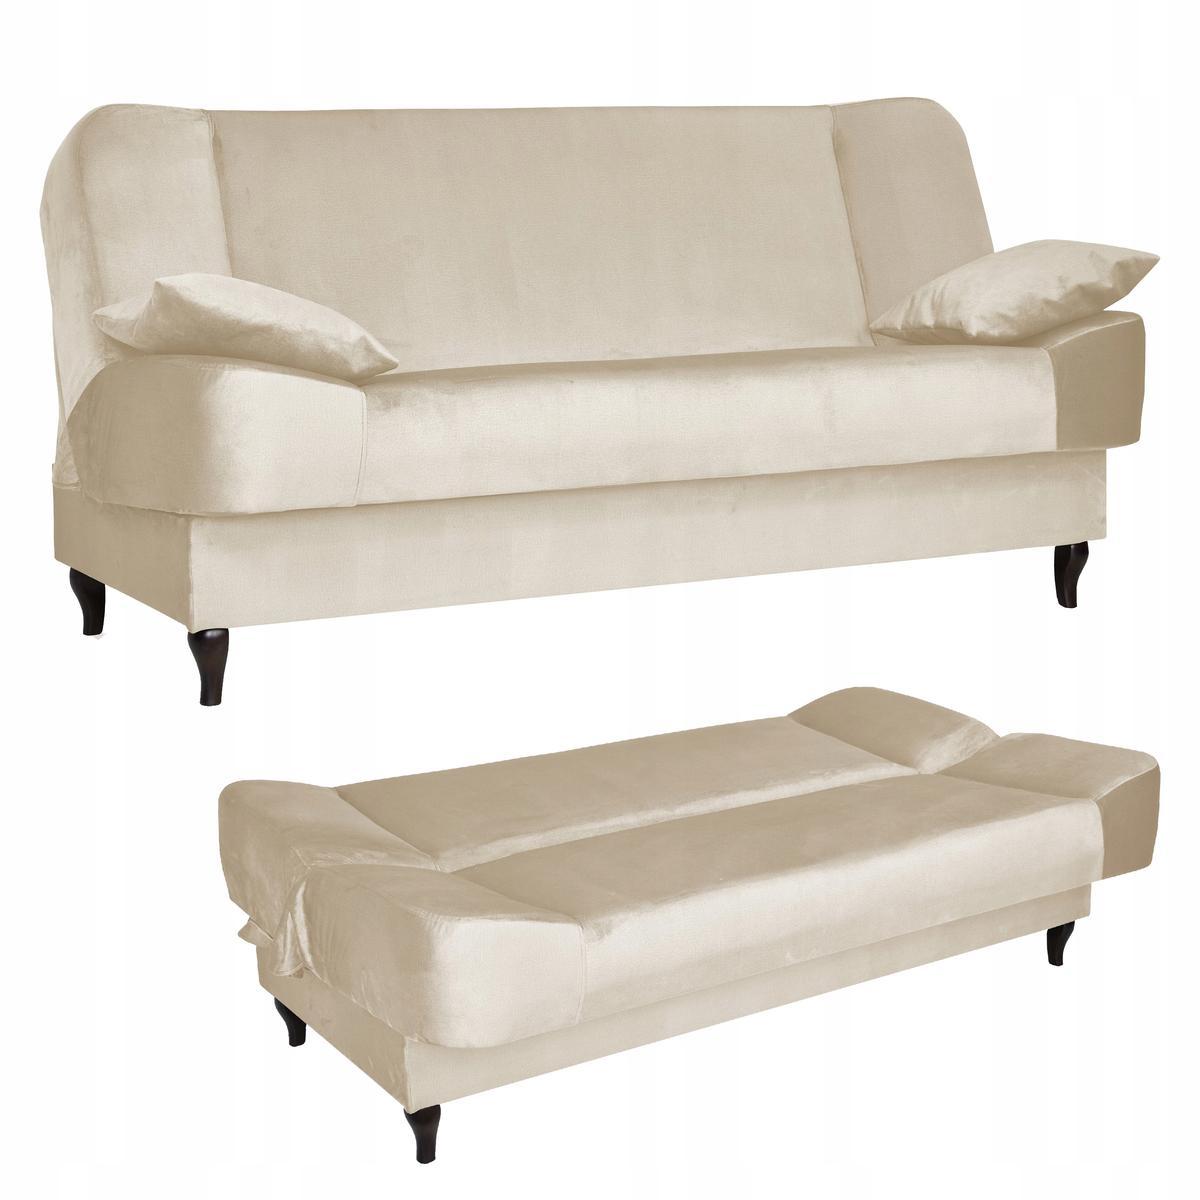 Wersalka SARA 200x95 cm kremowa rozkładana kanapa z pojemnikiem sofa do salonu Monolith nr. 1